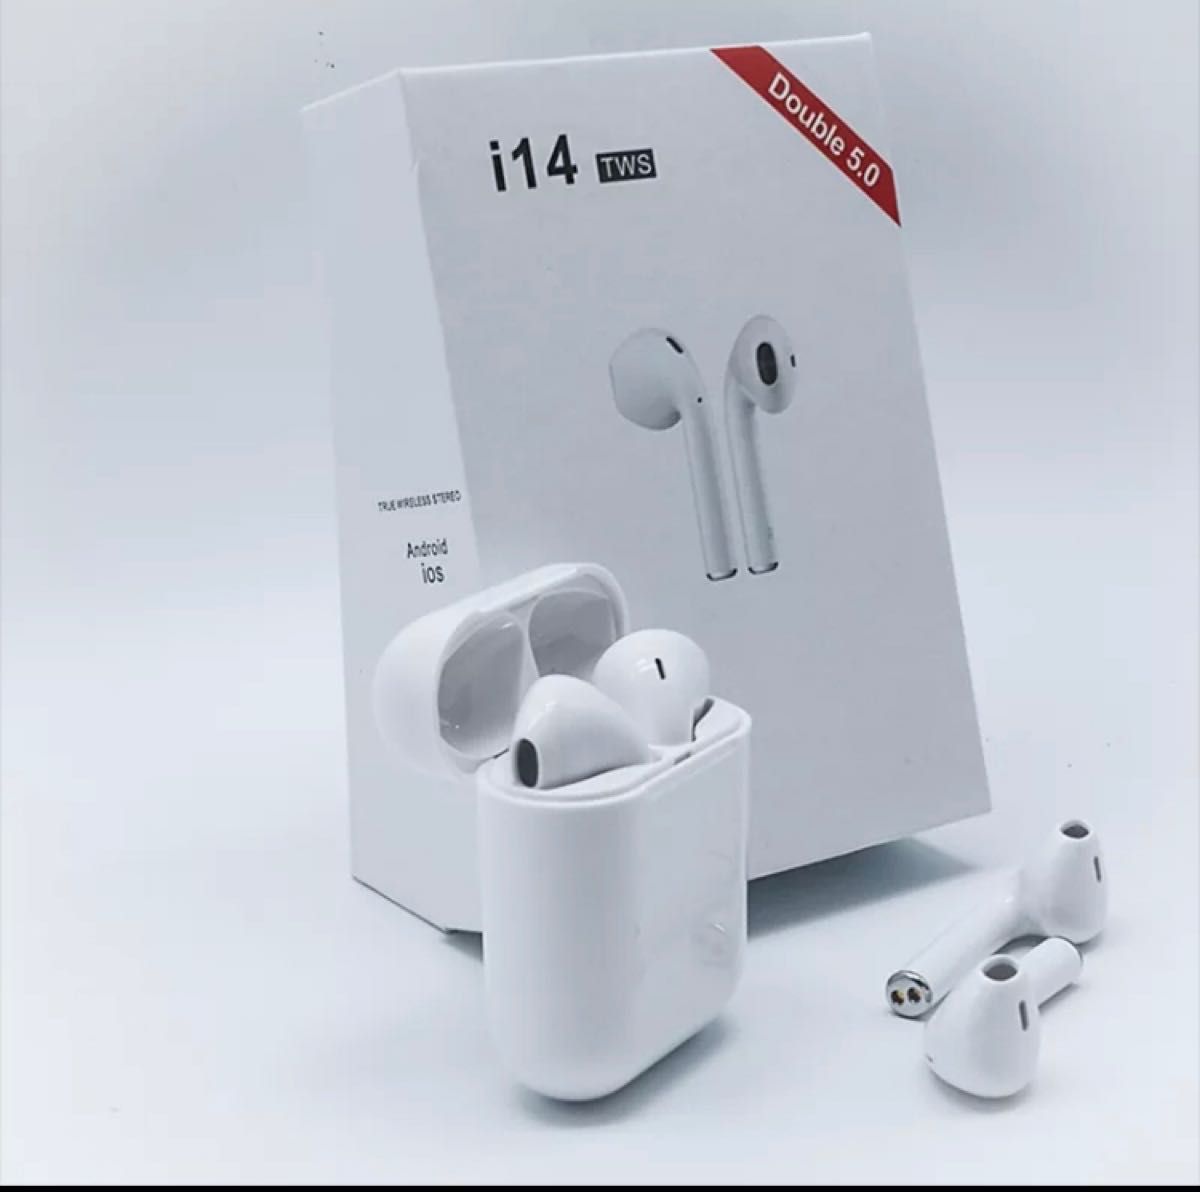 Bluetoothワイヤレスイヤホン 高音質 Apple iPhoneも使用可能